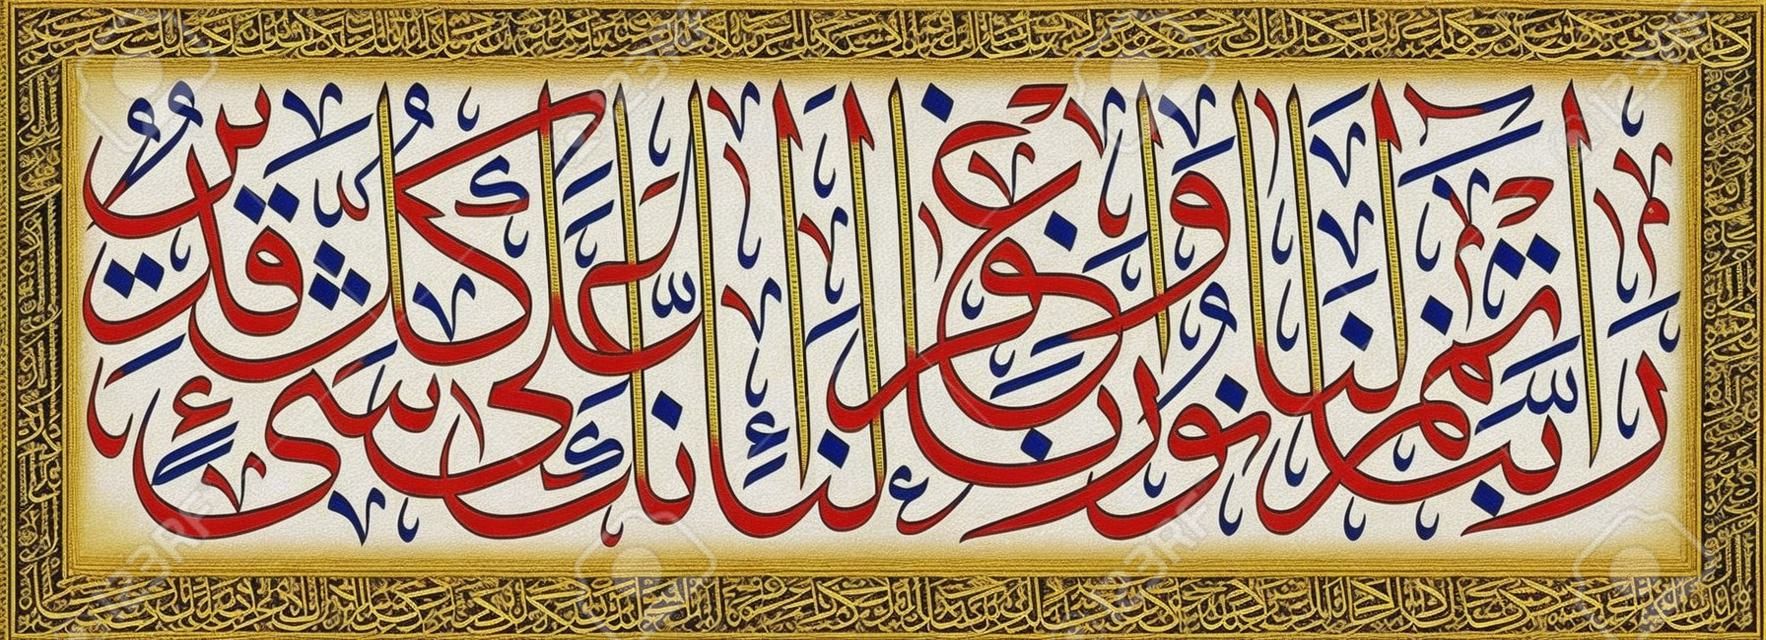 Islamische Kalligraphie aus dem Koran, Sure 66, Vers 8. -Unser Herr Gib uns volles Licht und vergib uns. Tatsächlich bist du zu allem fähig."